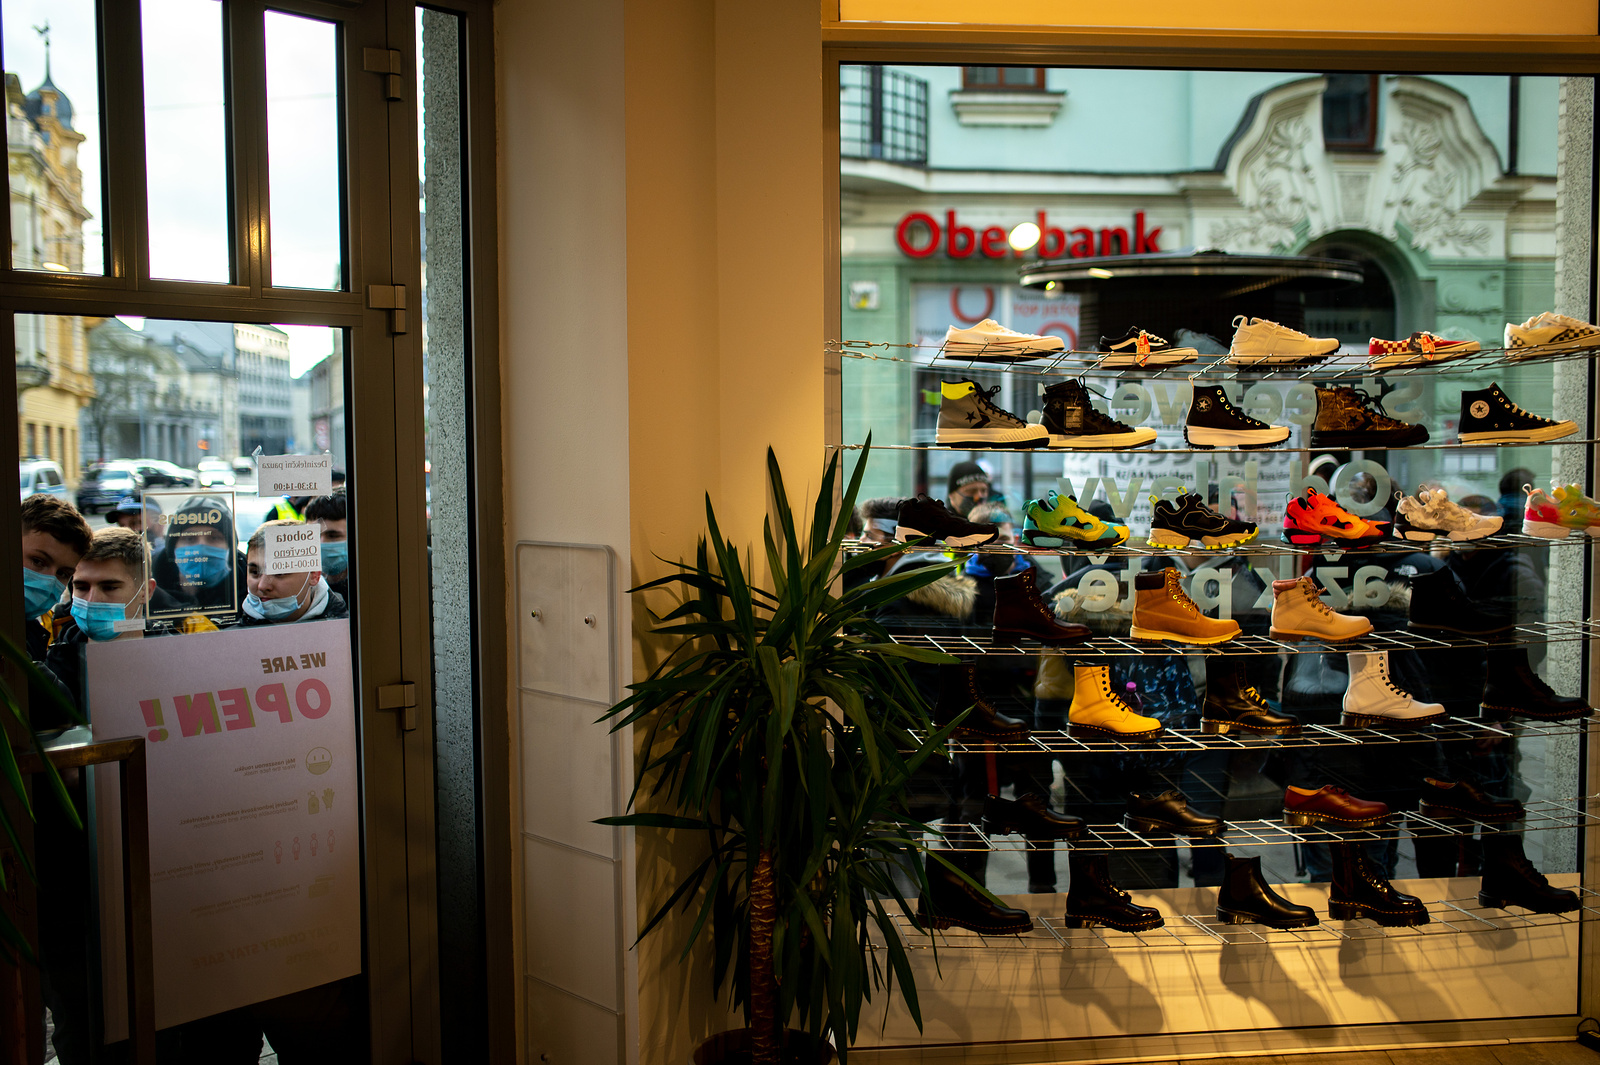 Šílenství v Ostravě kvůli limitované edici. Lidé čekali na boty přes noc -  Novojičínský deník